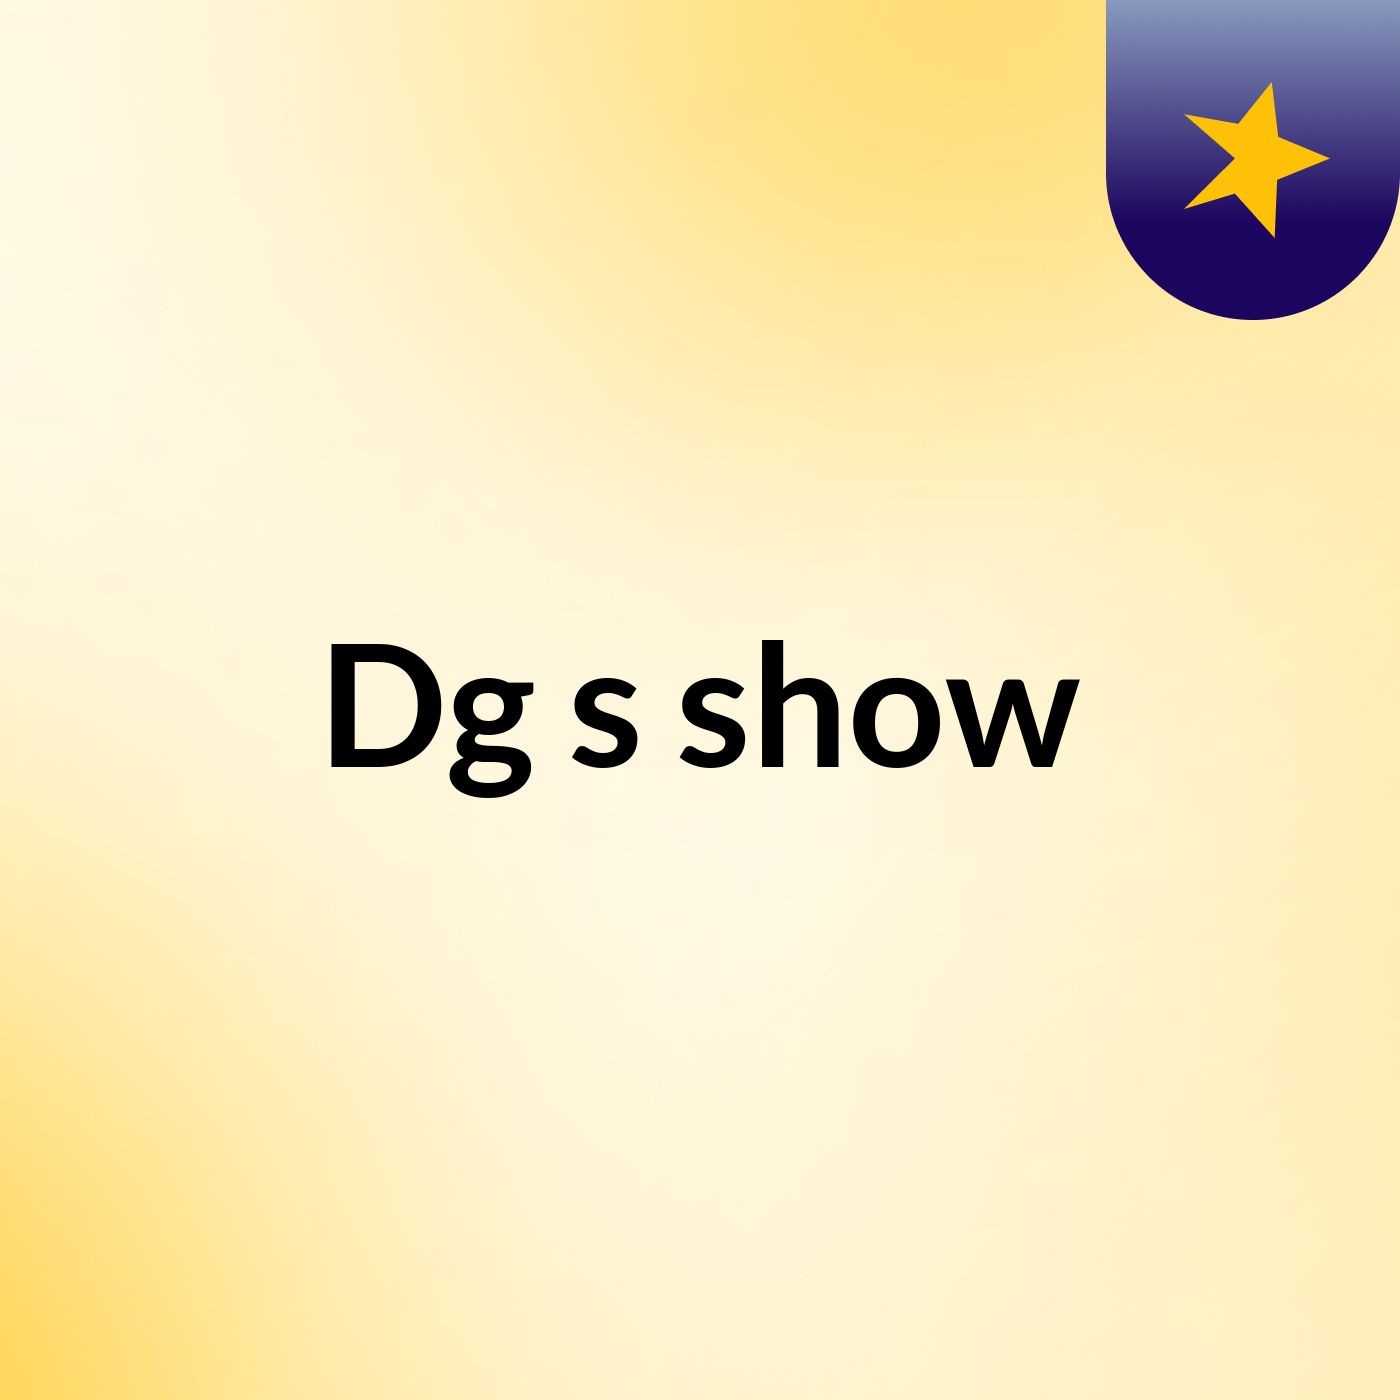 Dg's show